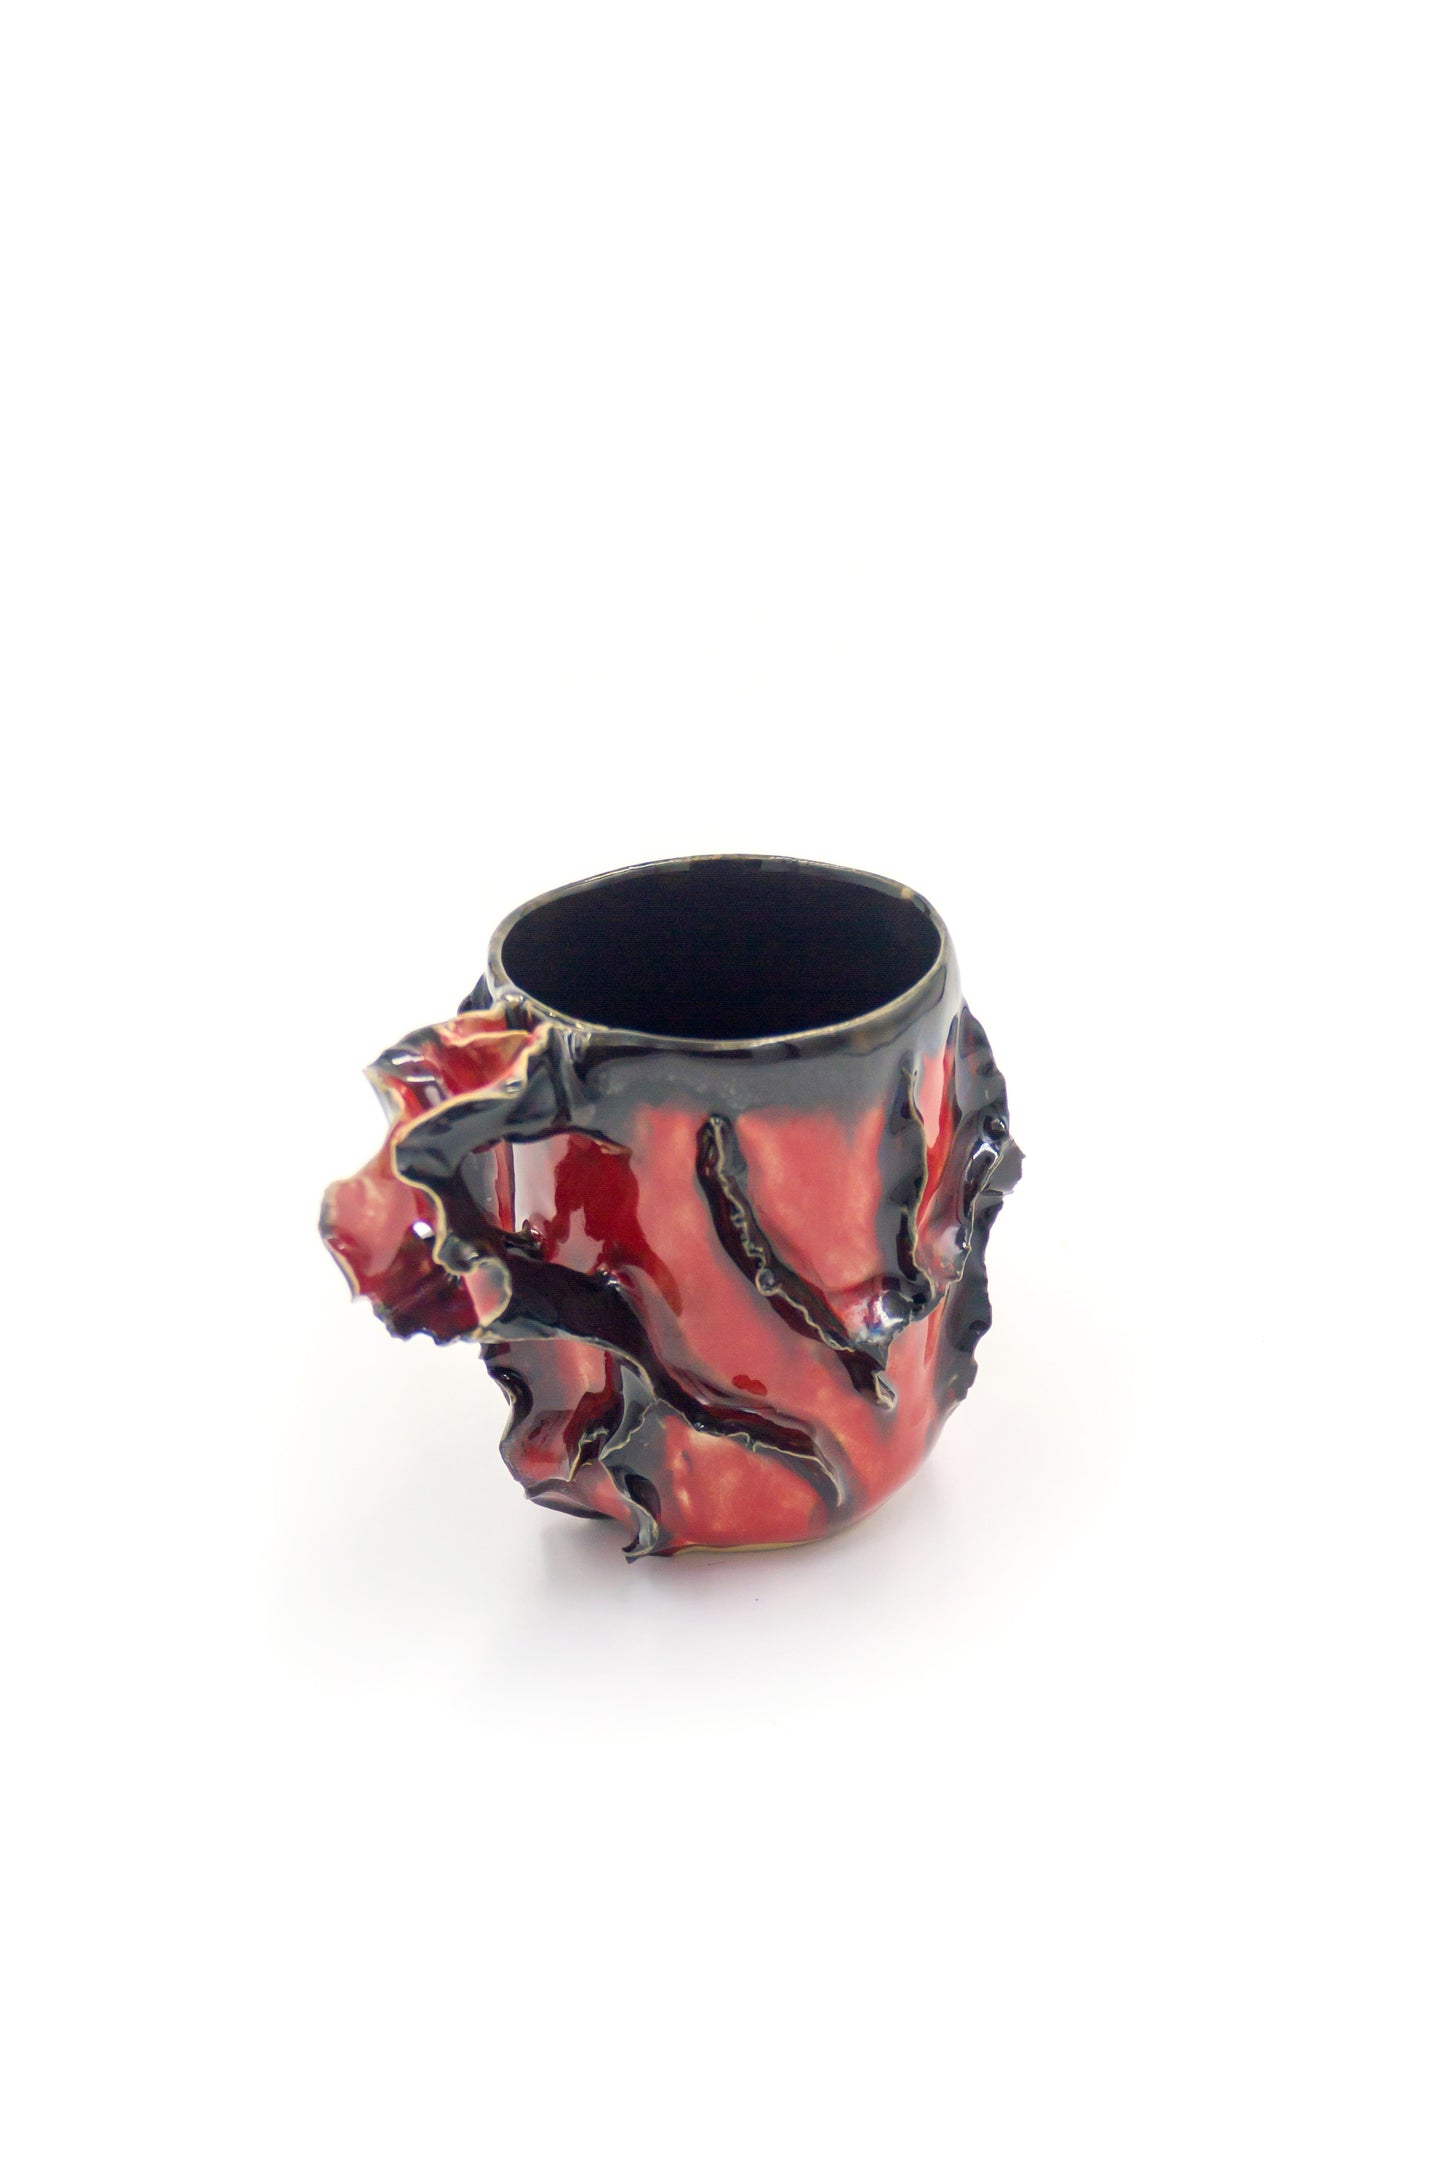 Kubek ceramiczny w kolorze czerwono-czarnym